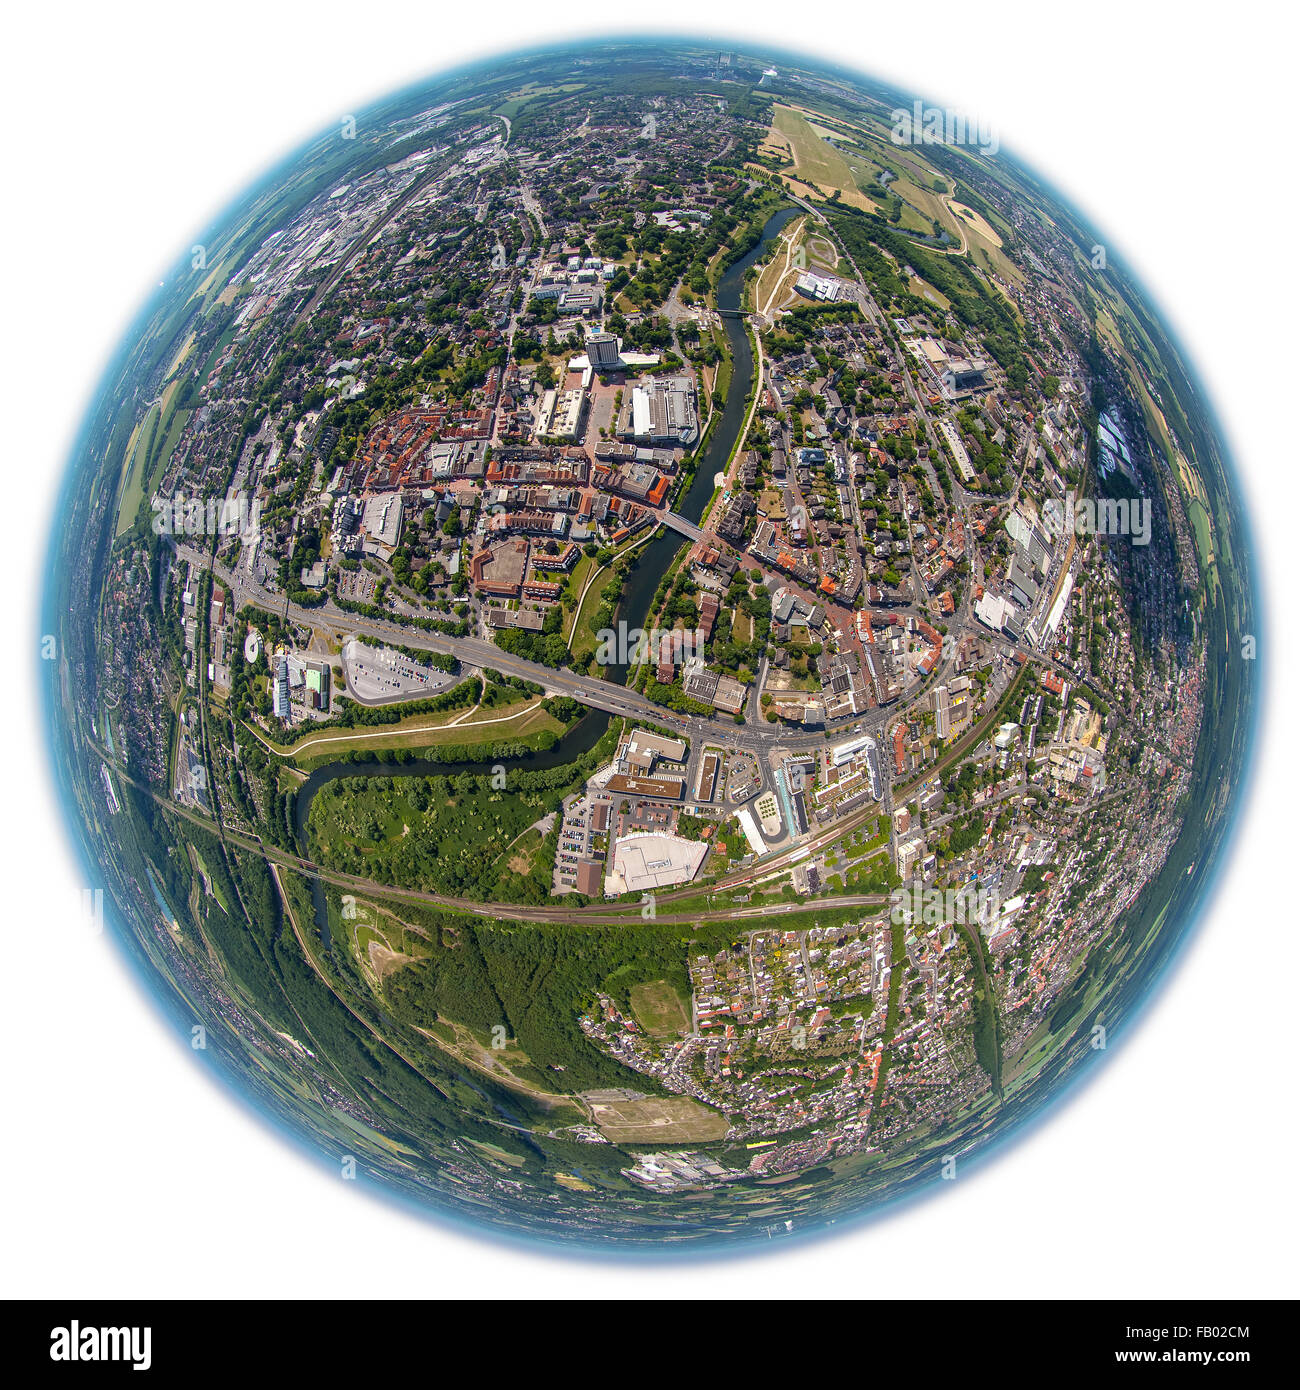 Vue aérienne, image fisheye, donnant sur le centre-ville de Lünen avec la lèvre et Piazza, Fish Eye Shot, Panorama, objectif Fisheye, Banque D'Images